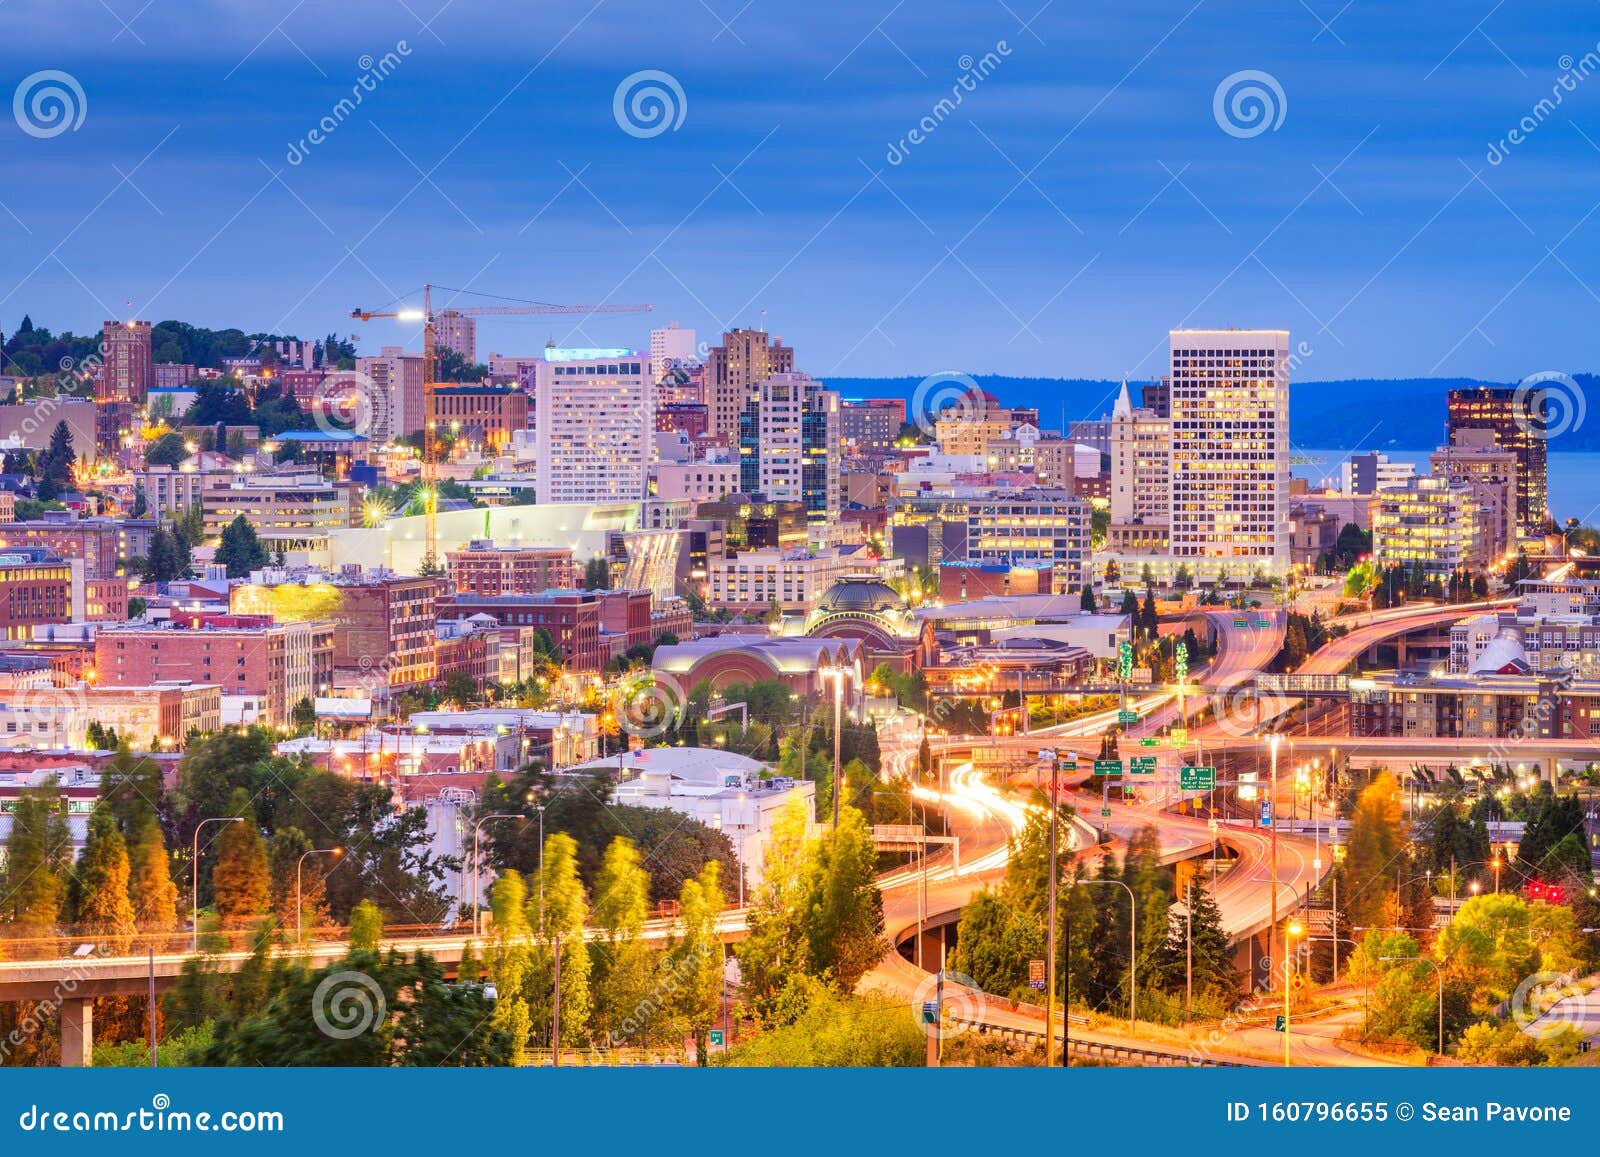 Tacoma, Washington, USA Skyline at Night Stock Image - Image of evening,  location: 160796655